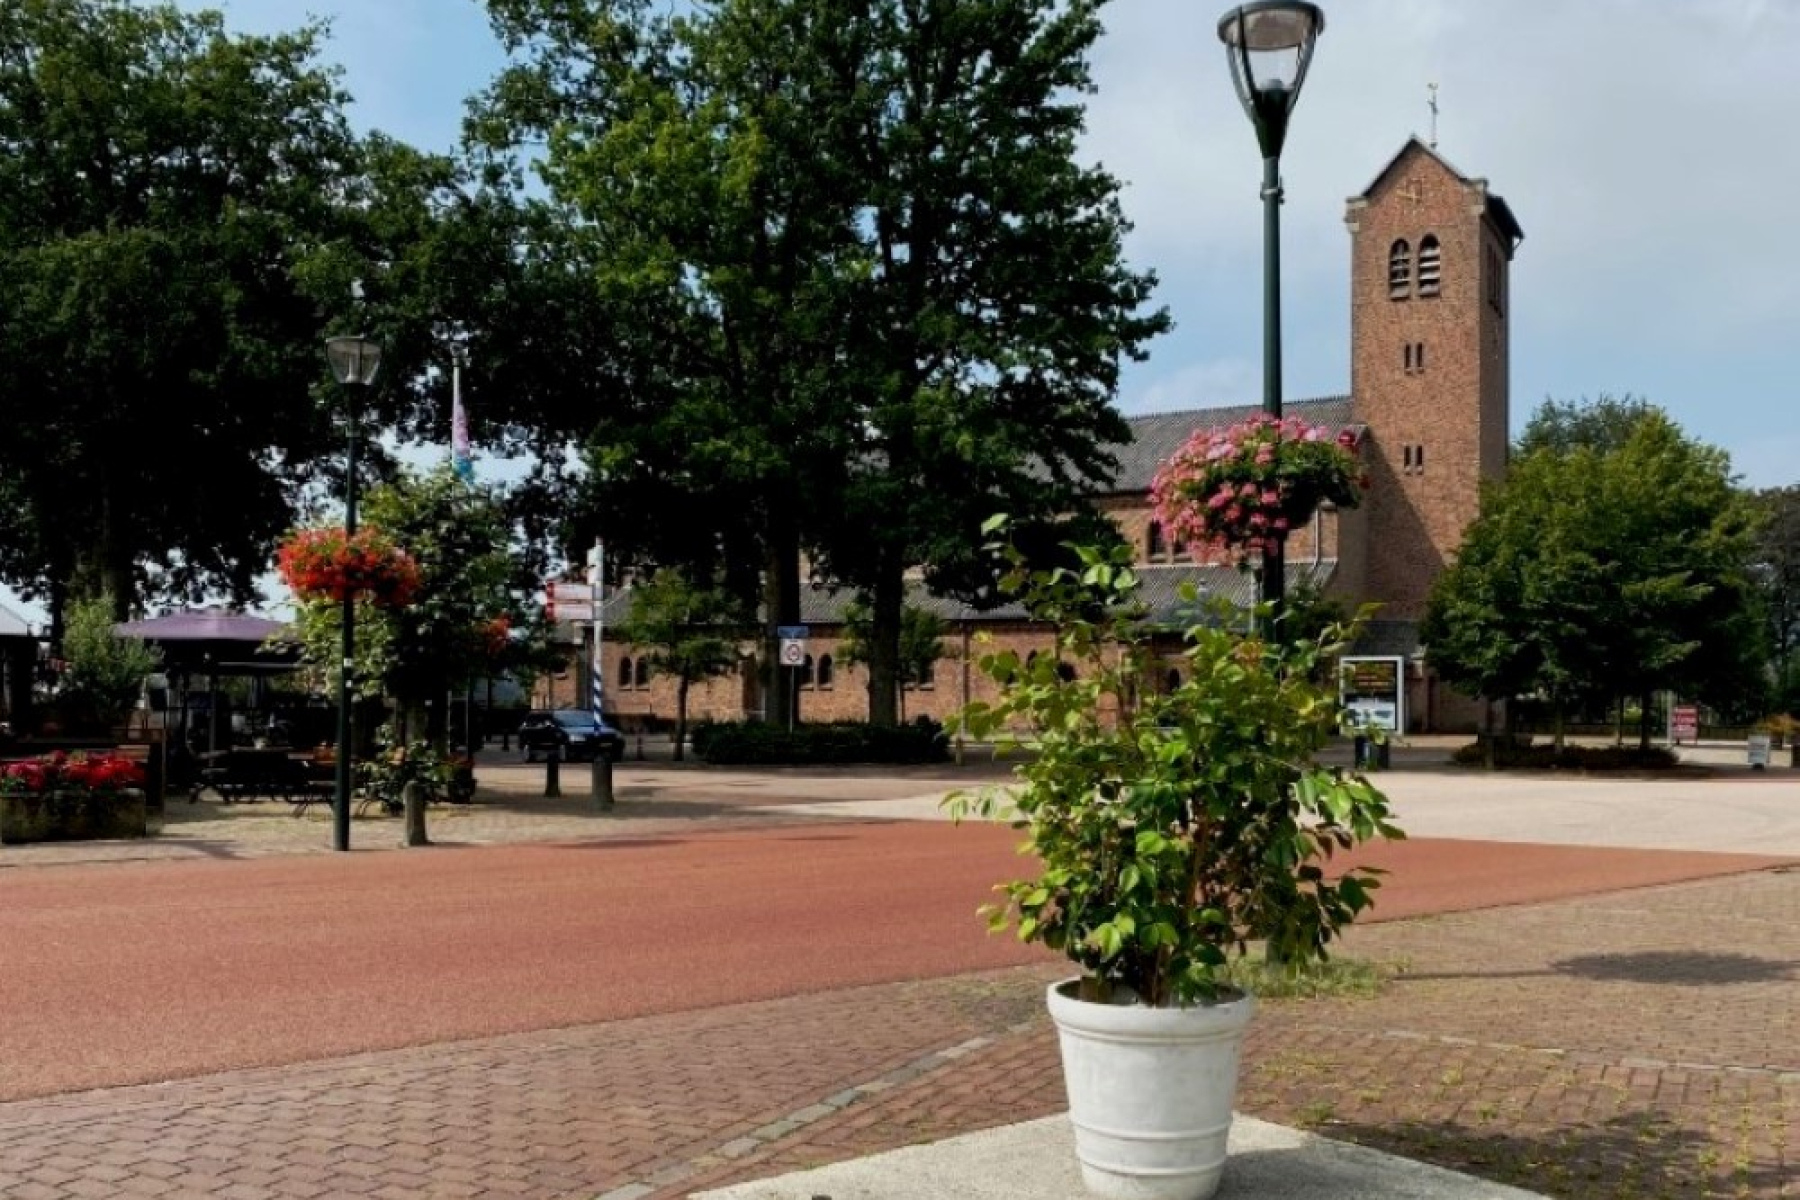 Staat ons kerkgebouw over 10 jaar nog steeds centraal in Hengevelde?